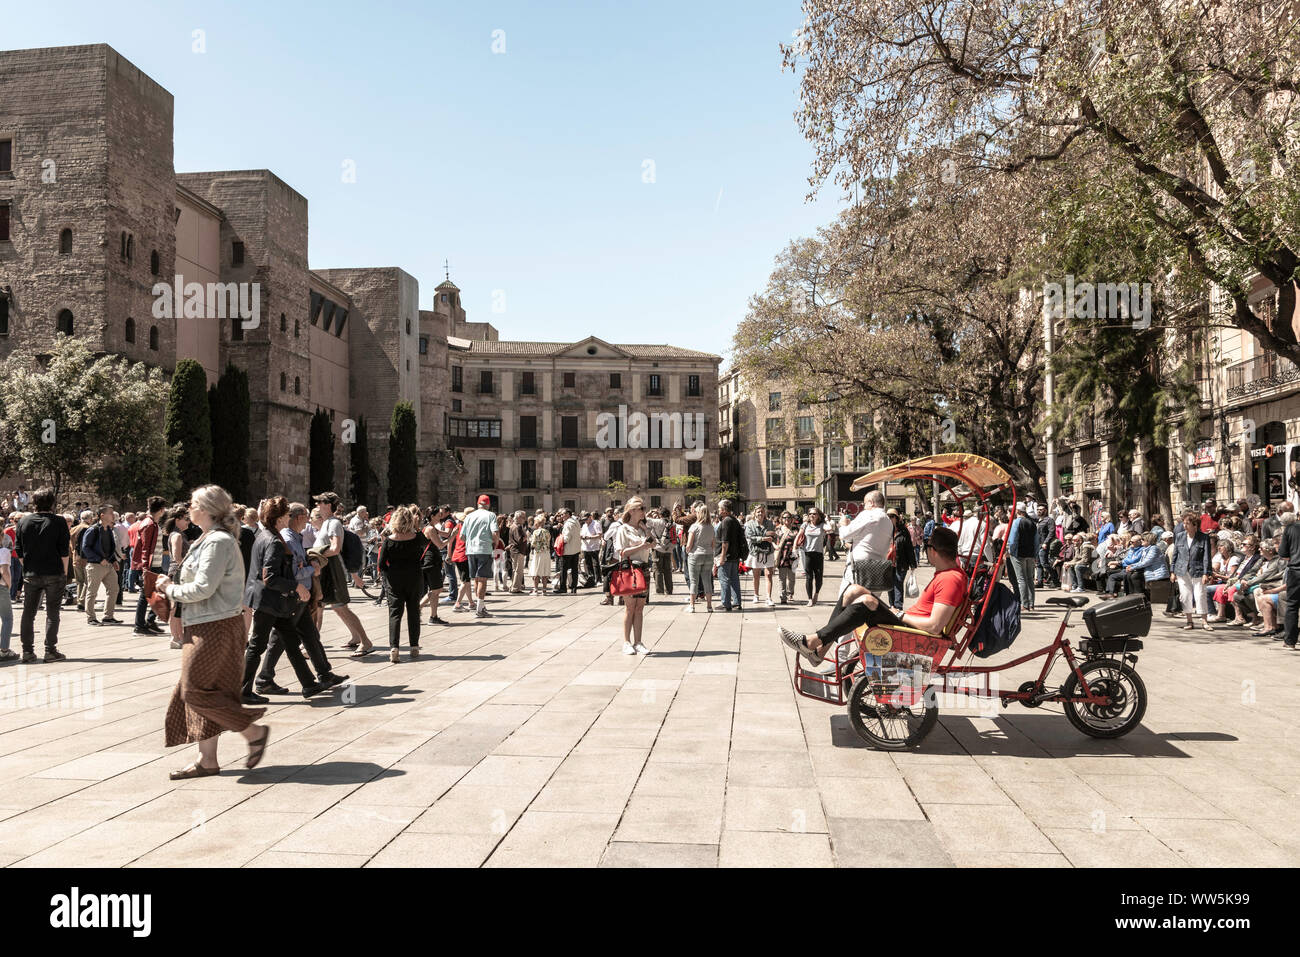 Authentische Bilder von realen Menschen in alltäglichen Situationen. Spaß haben im Urlaub, Radfahren, Shopping, Wandern und Joggen in Barcelona, Spanien. Stockfoto